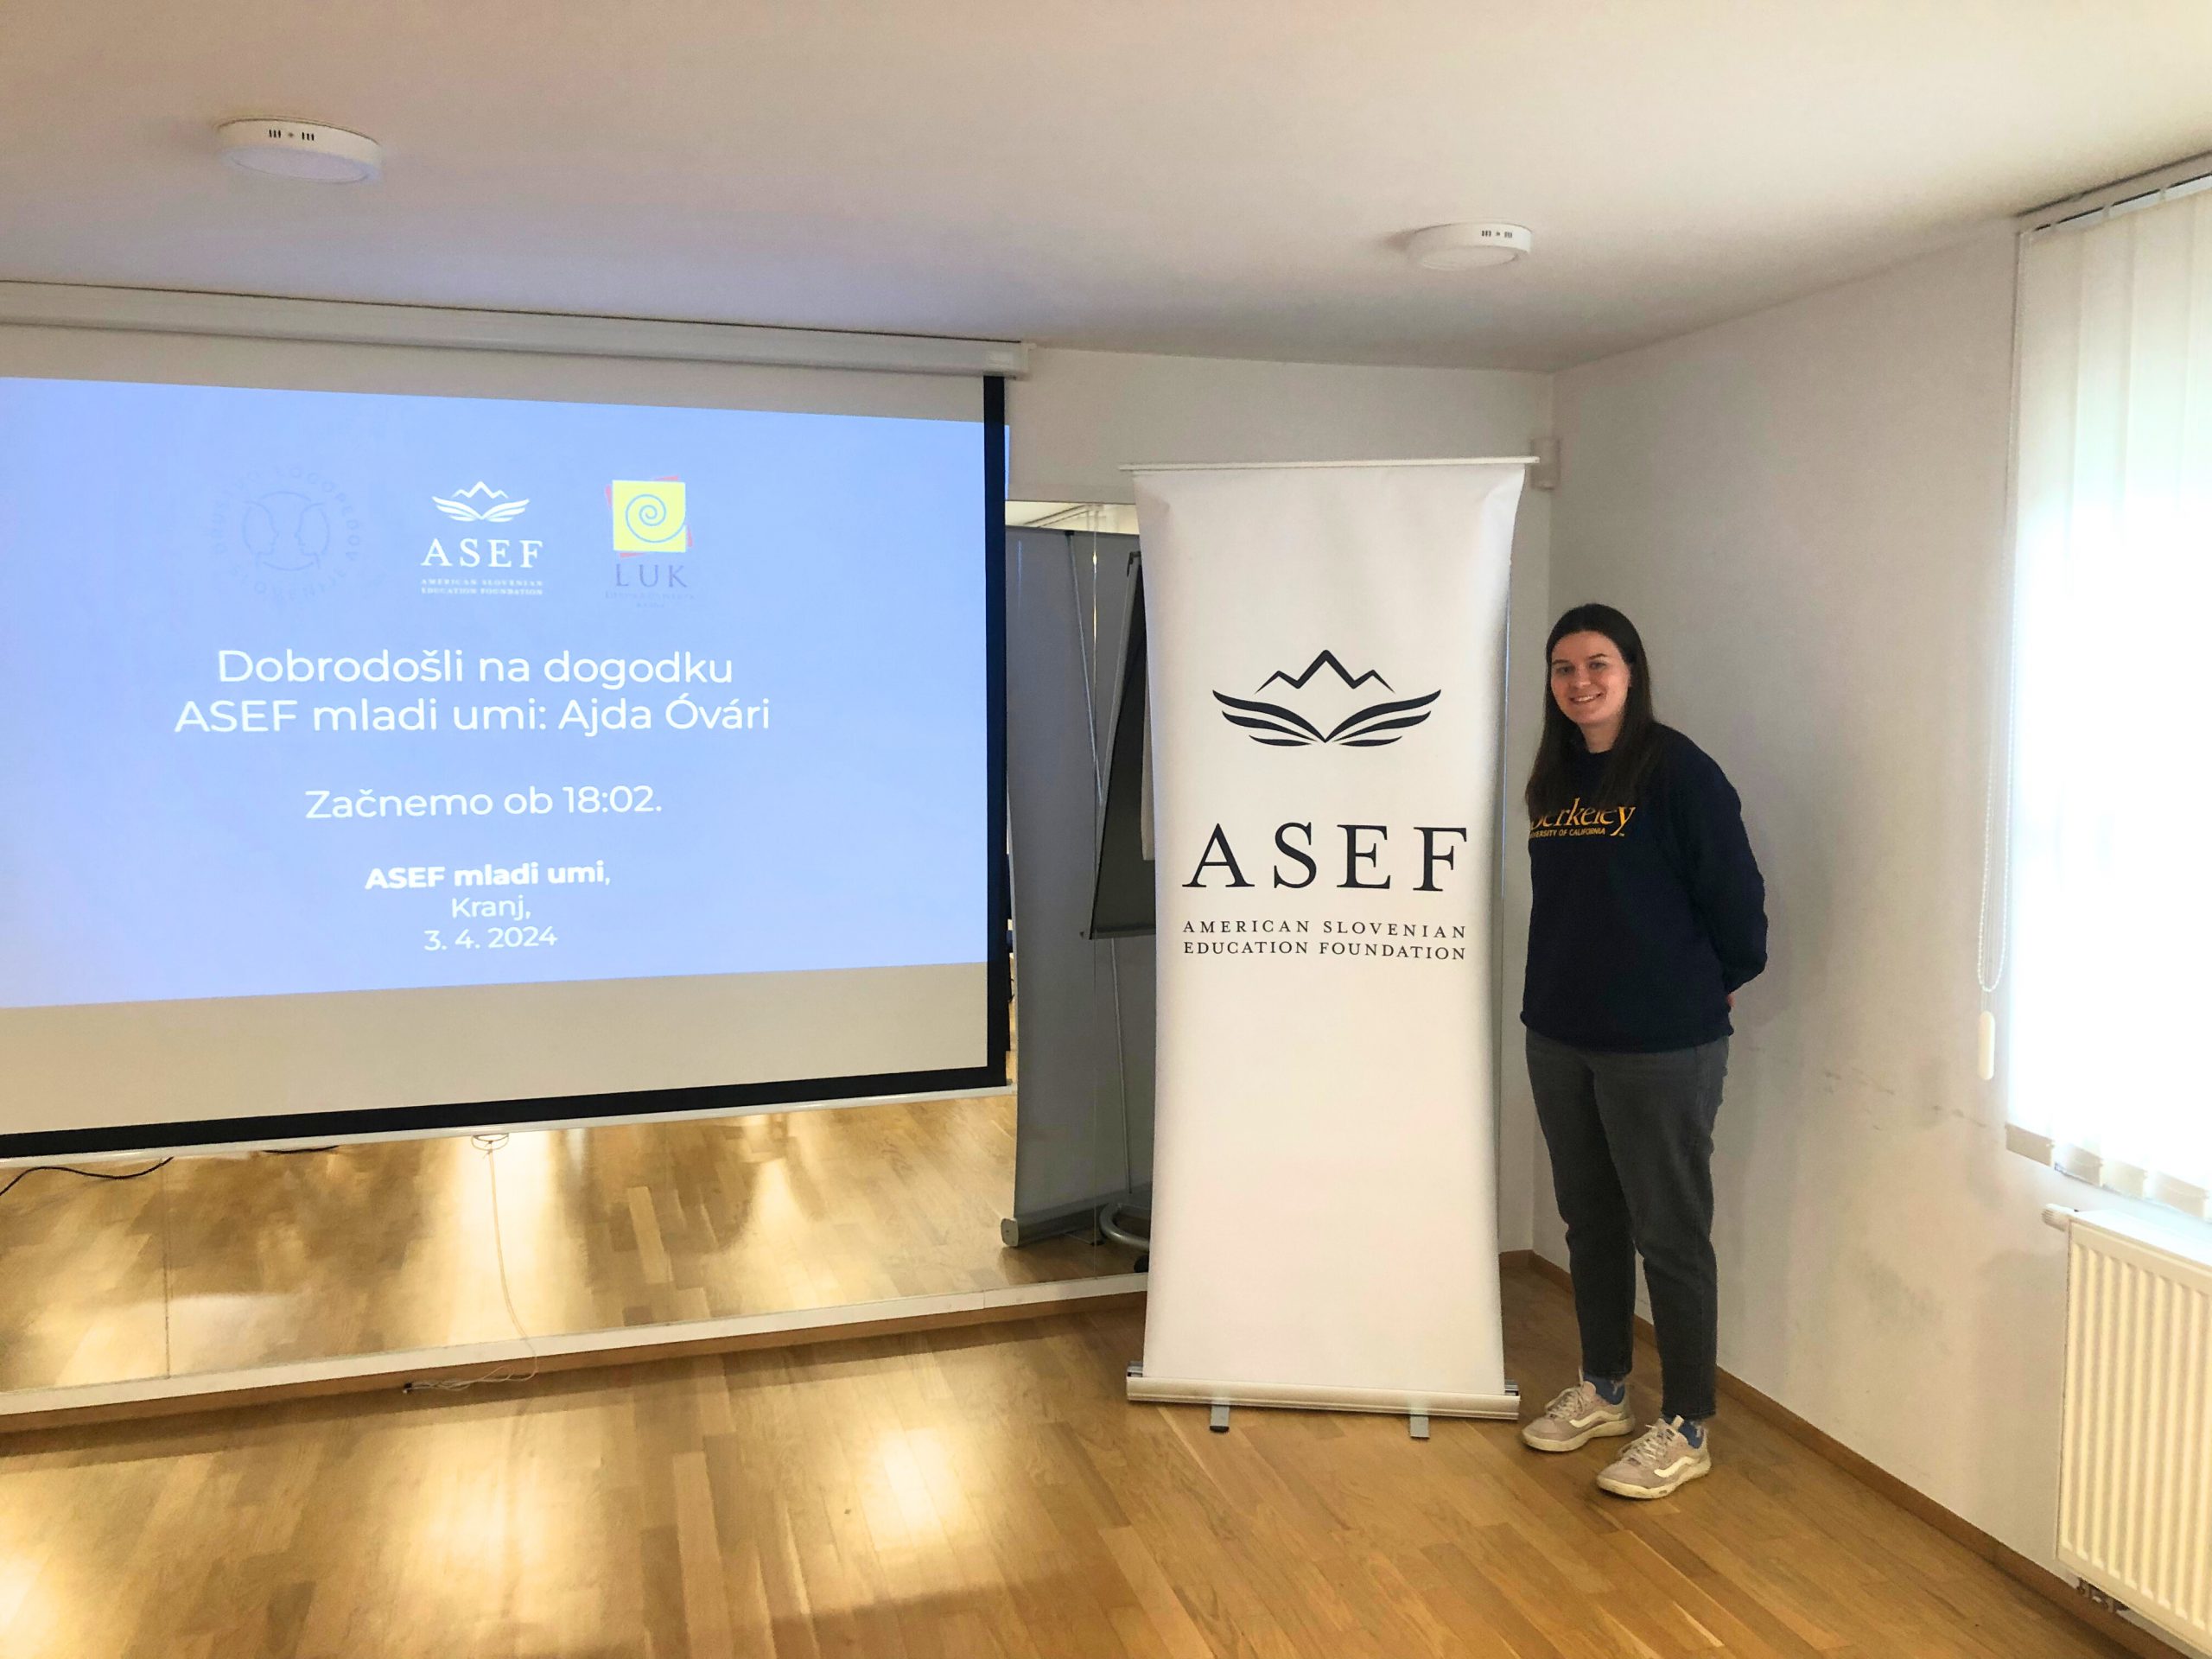 ASEF Junior Fellow 2021 Ajda Óvári at the event